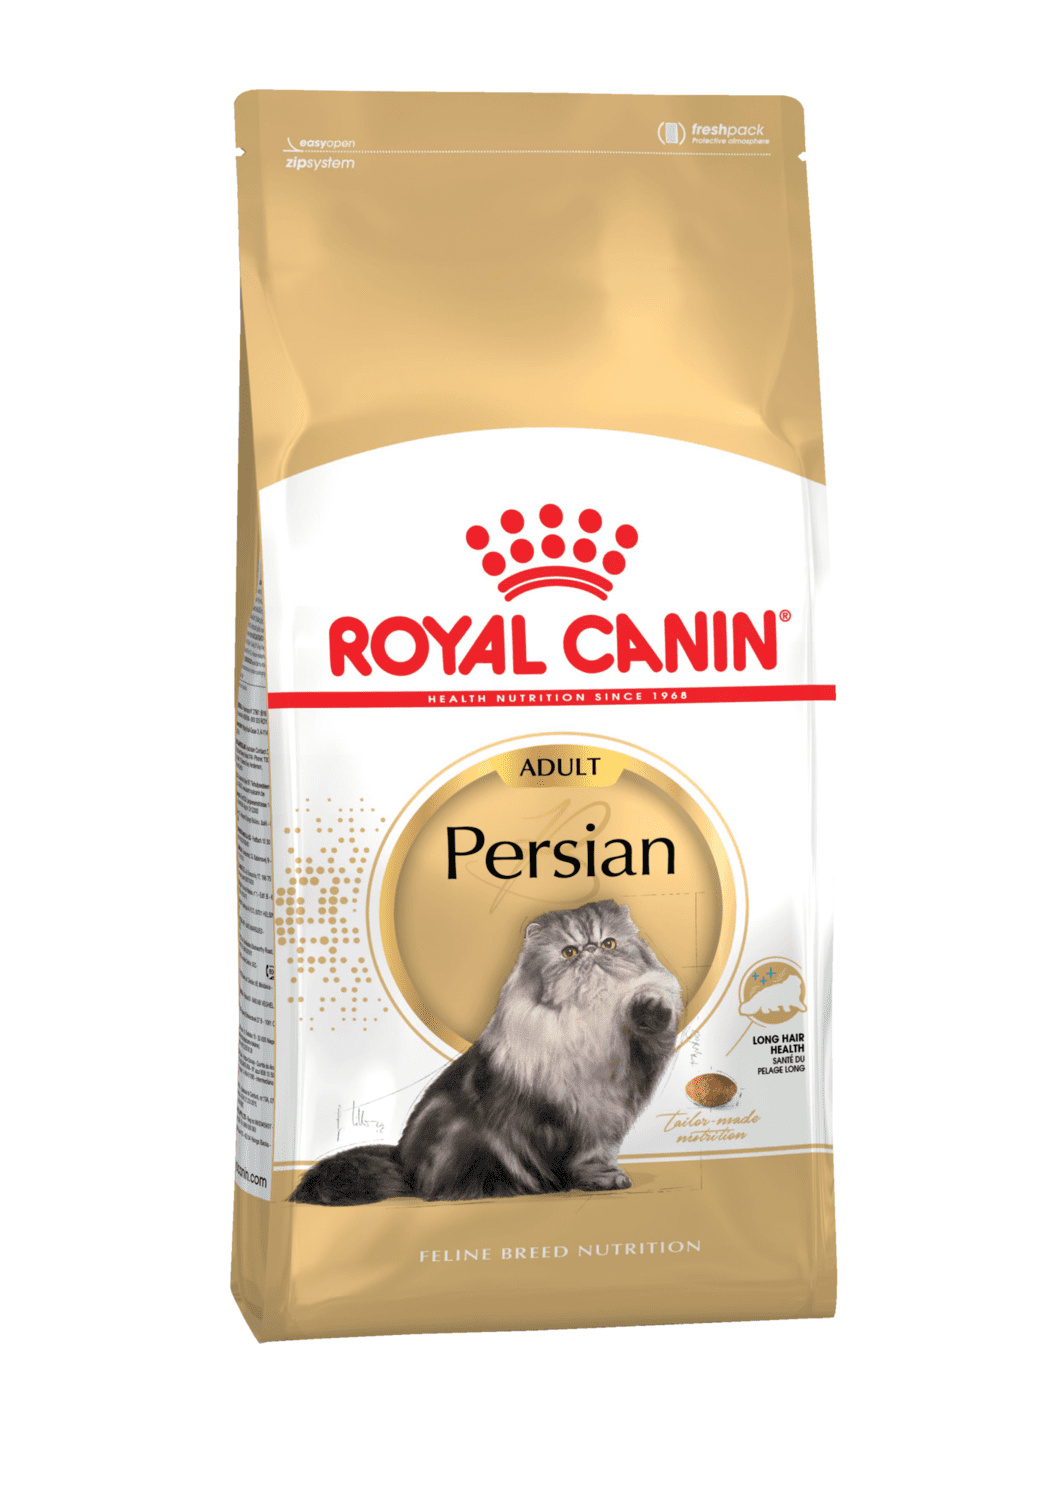 Для персидских кошек 1-10 лет (10 кг) Royal Canin (сухие корма) Для персидских кошек 1-10 лет (10 кг) - фото 1